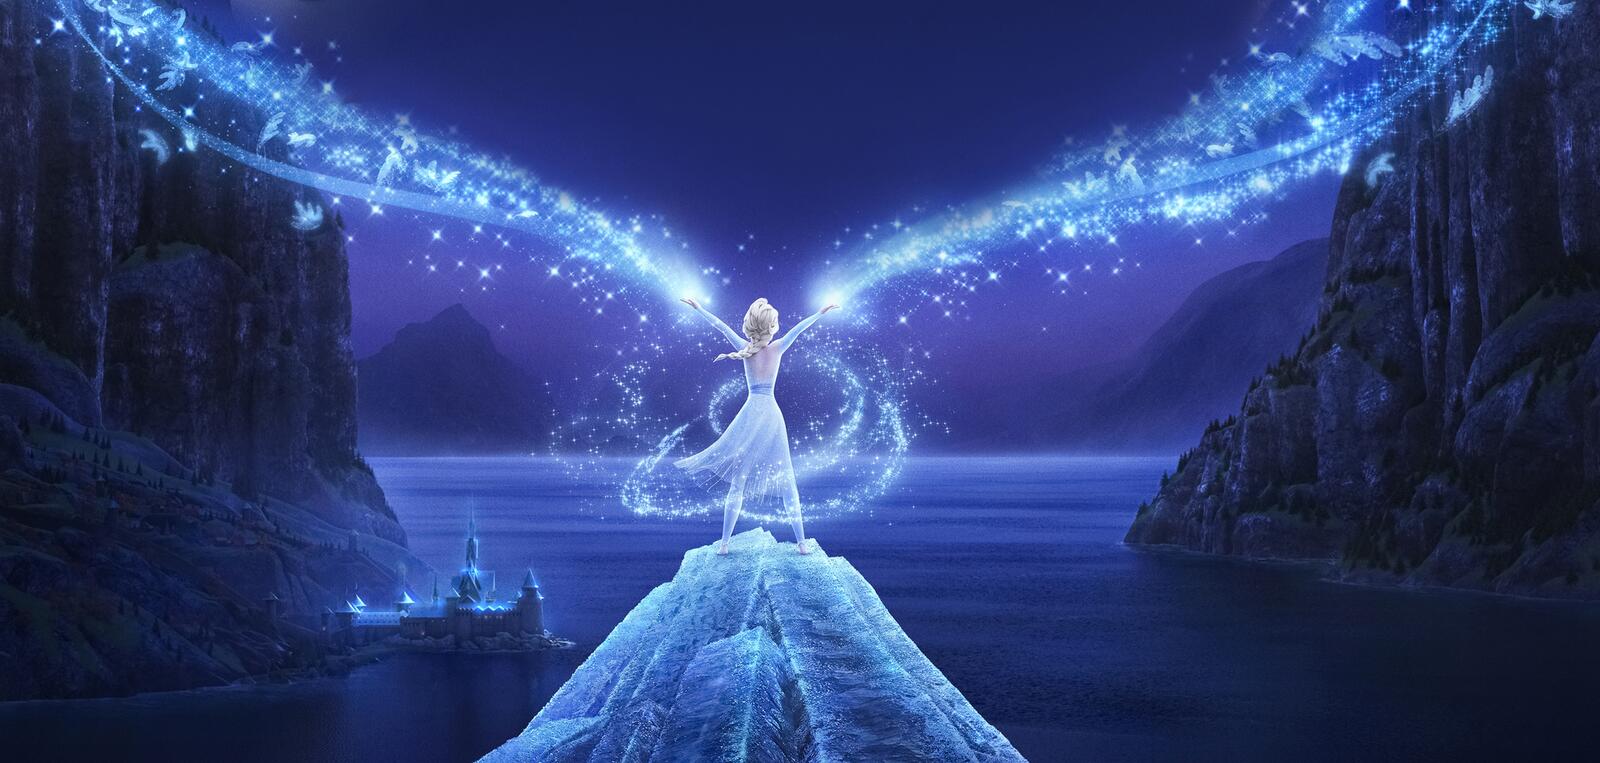 Wallpapers frozen 2 animation queen Elsa on the desktop